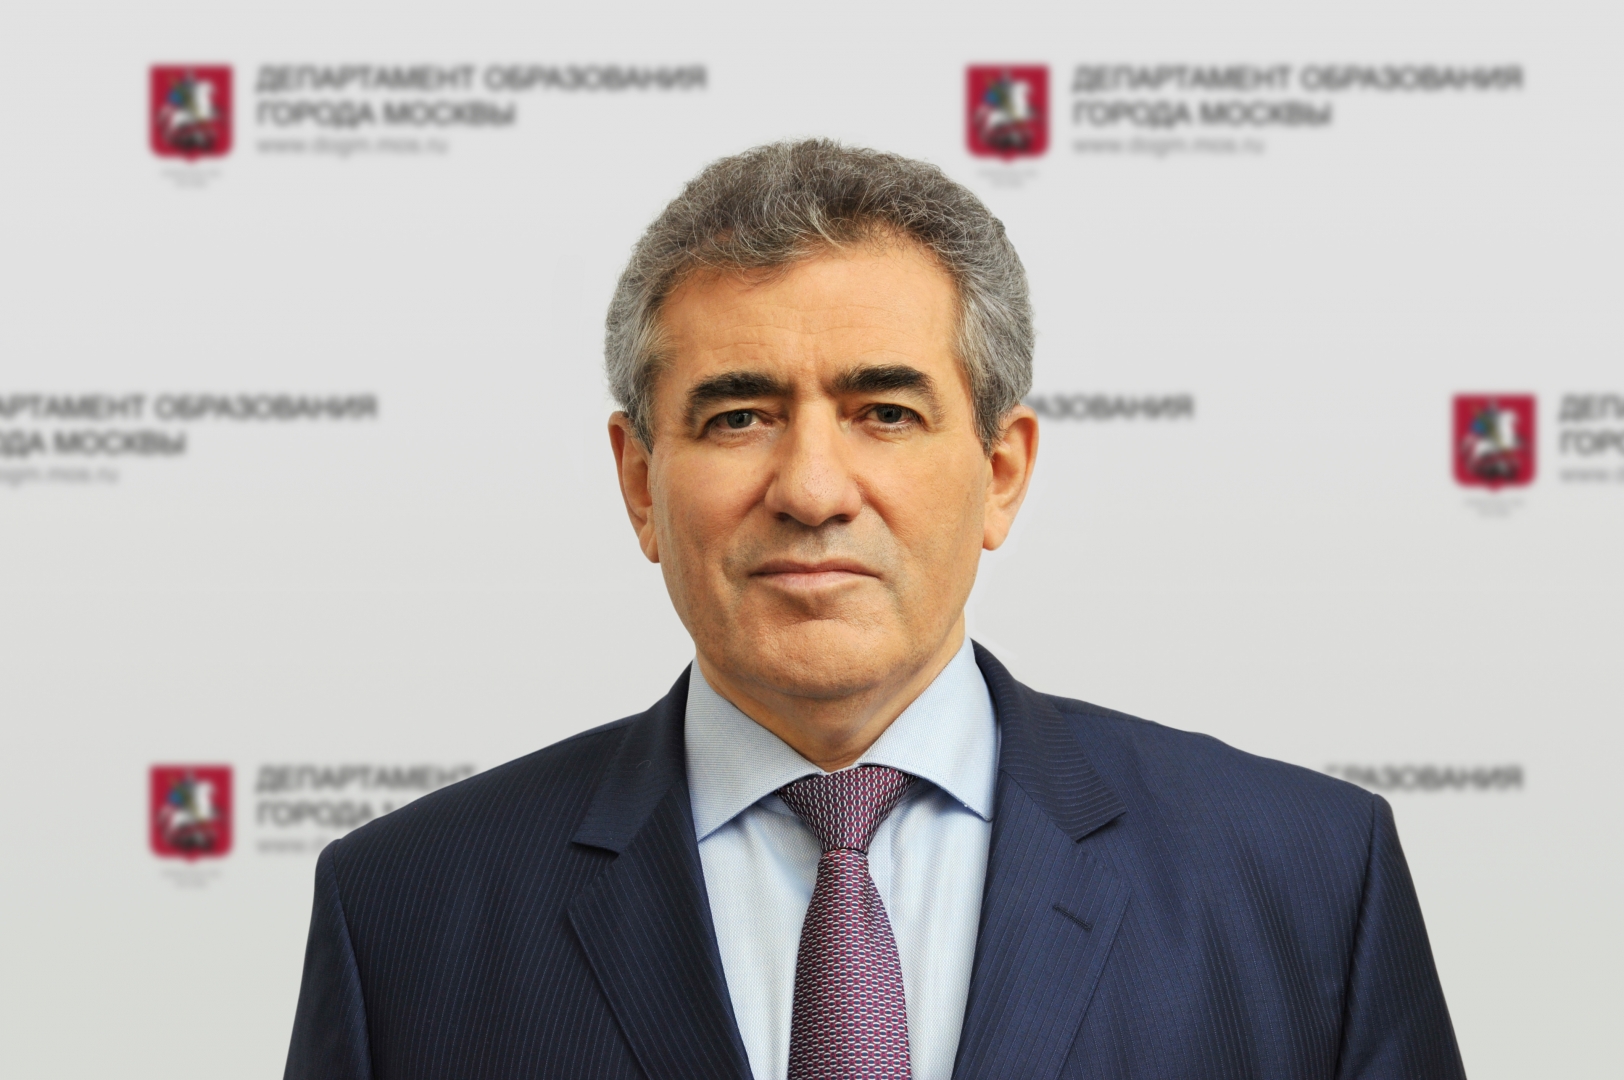 министр образования москвы